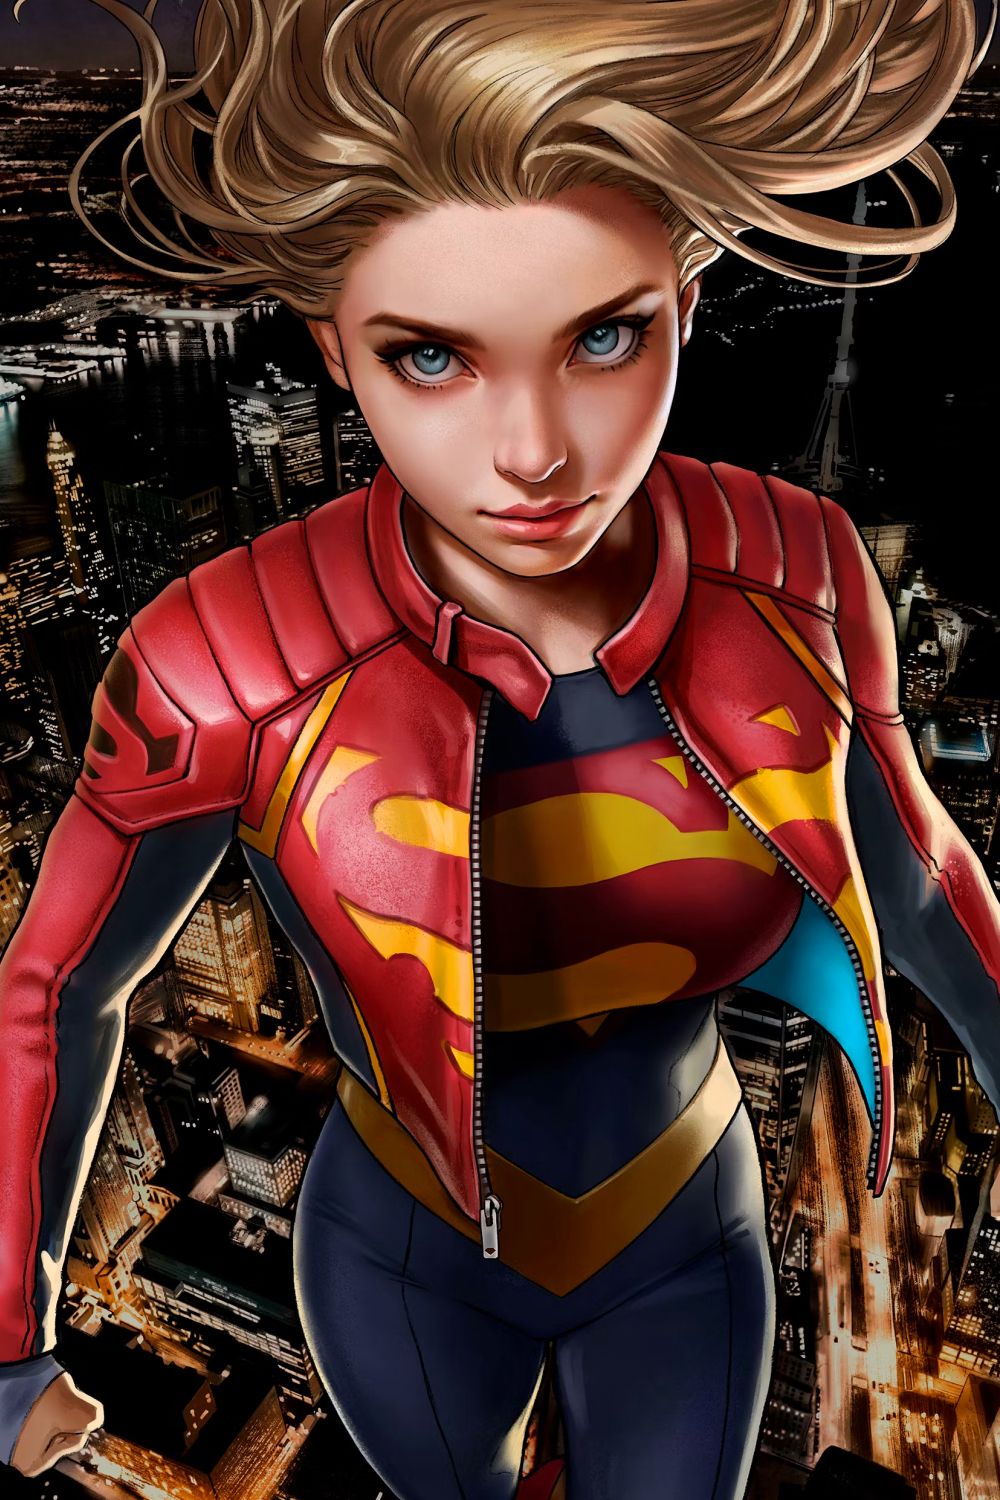 Arte em quadrinhos da Supergirl por Talavera